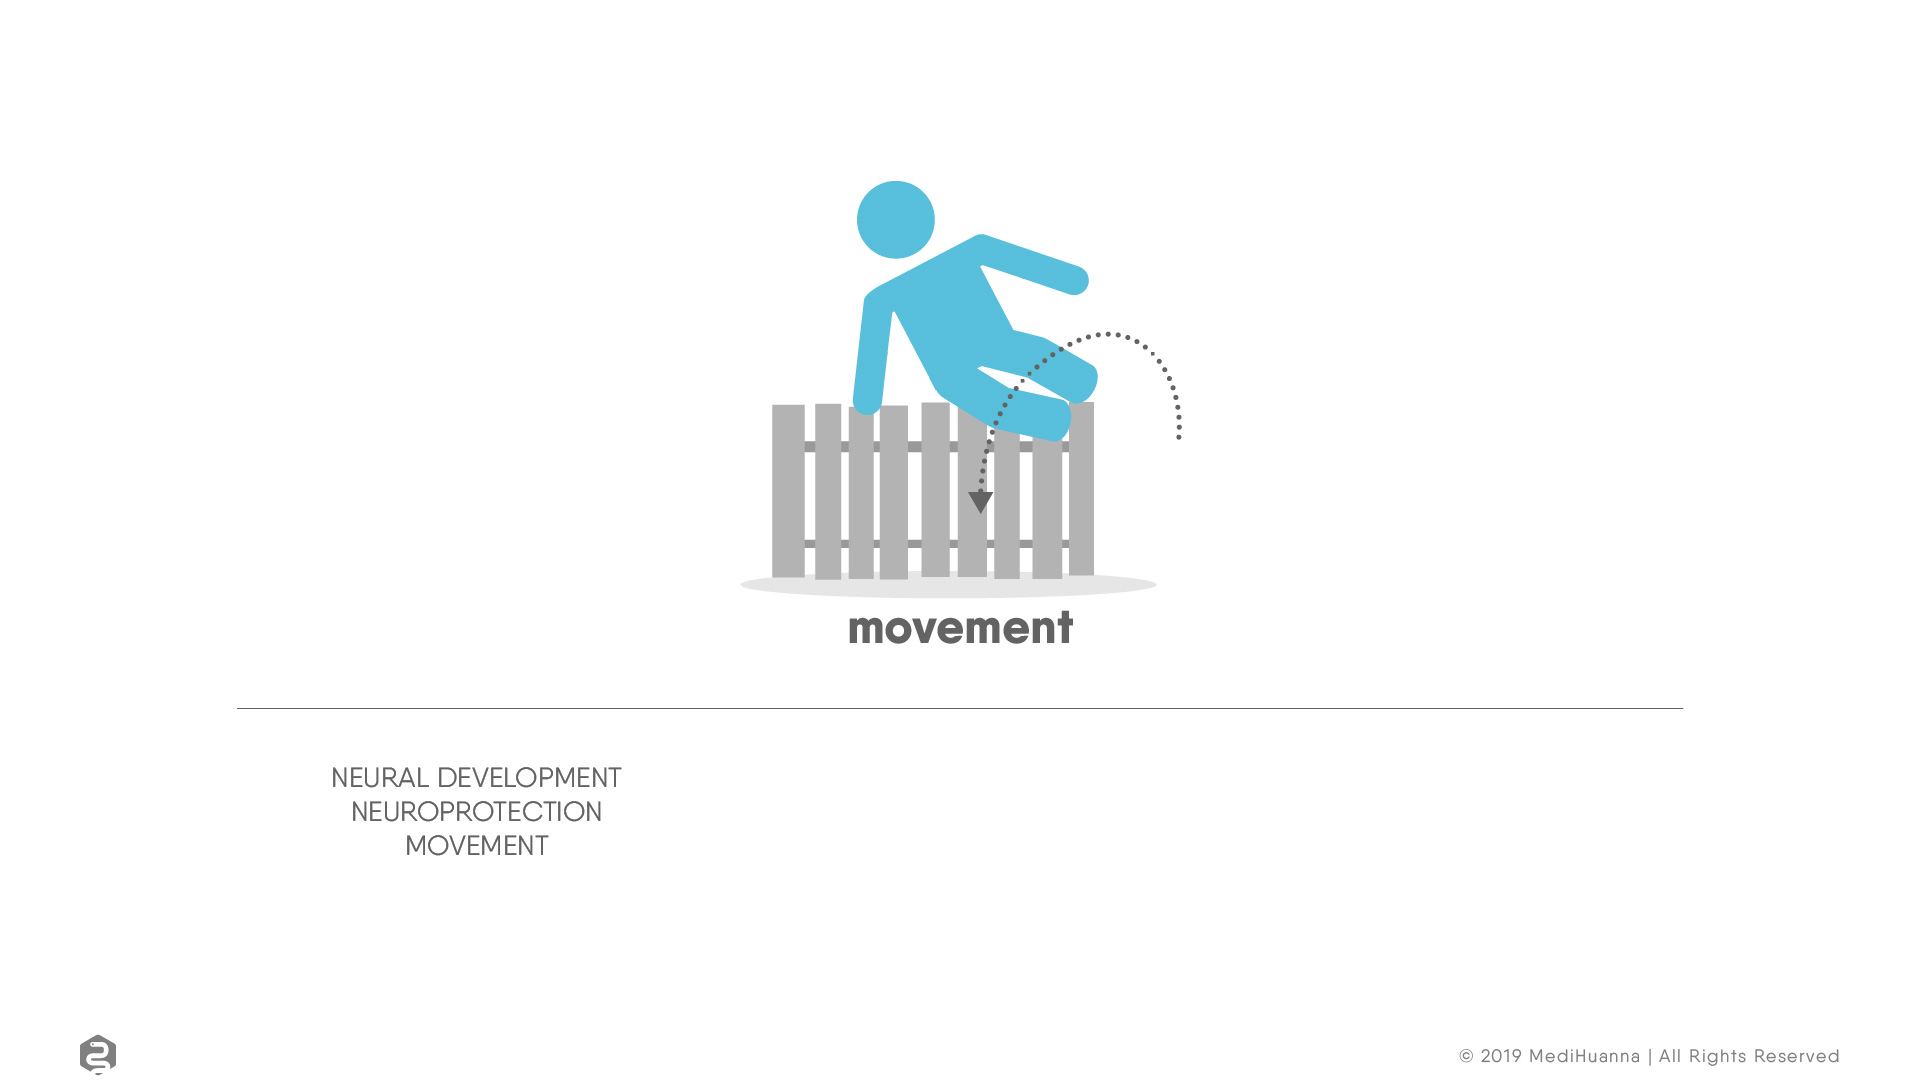 Neural development, movement